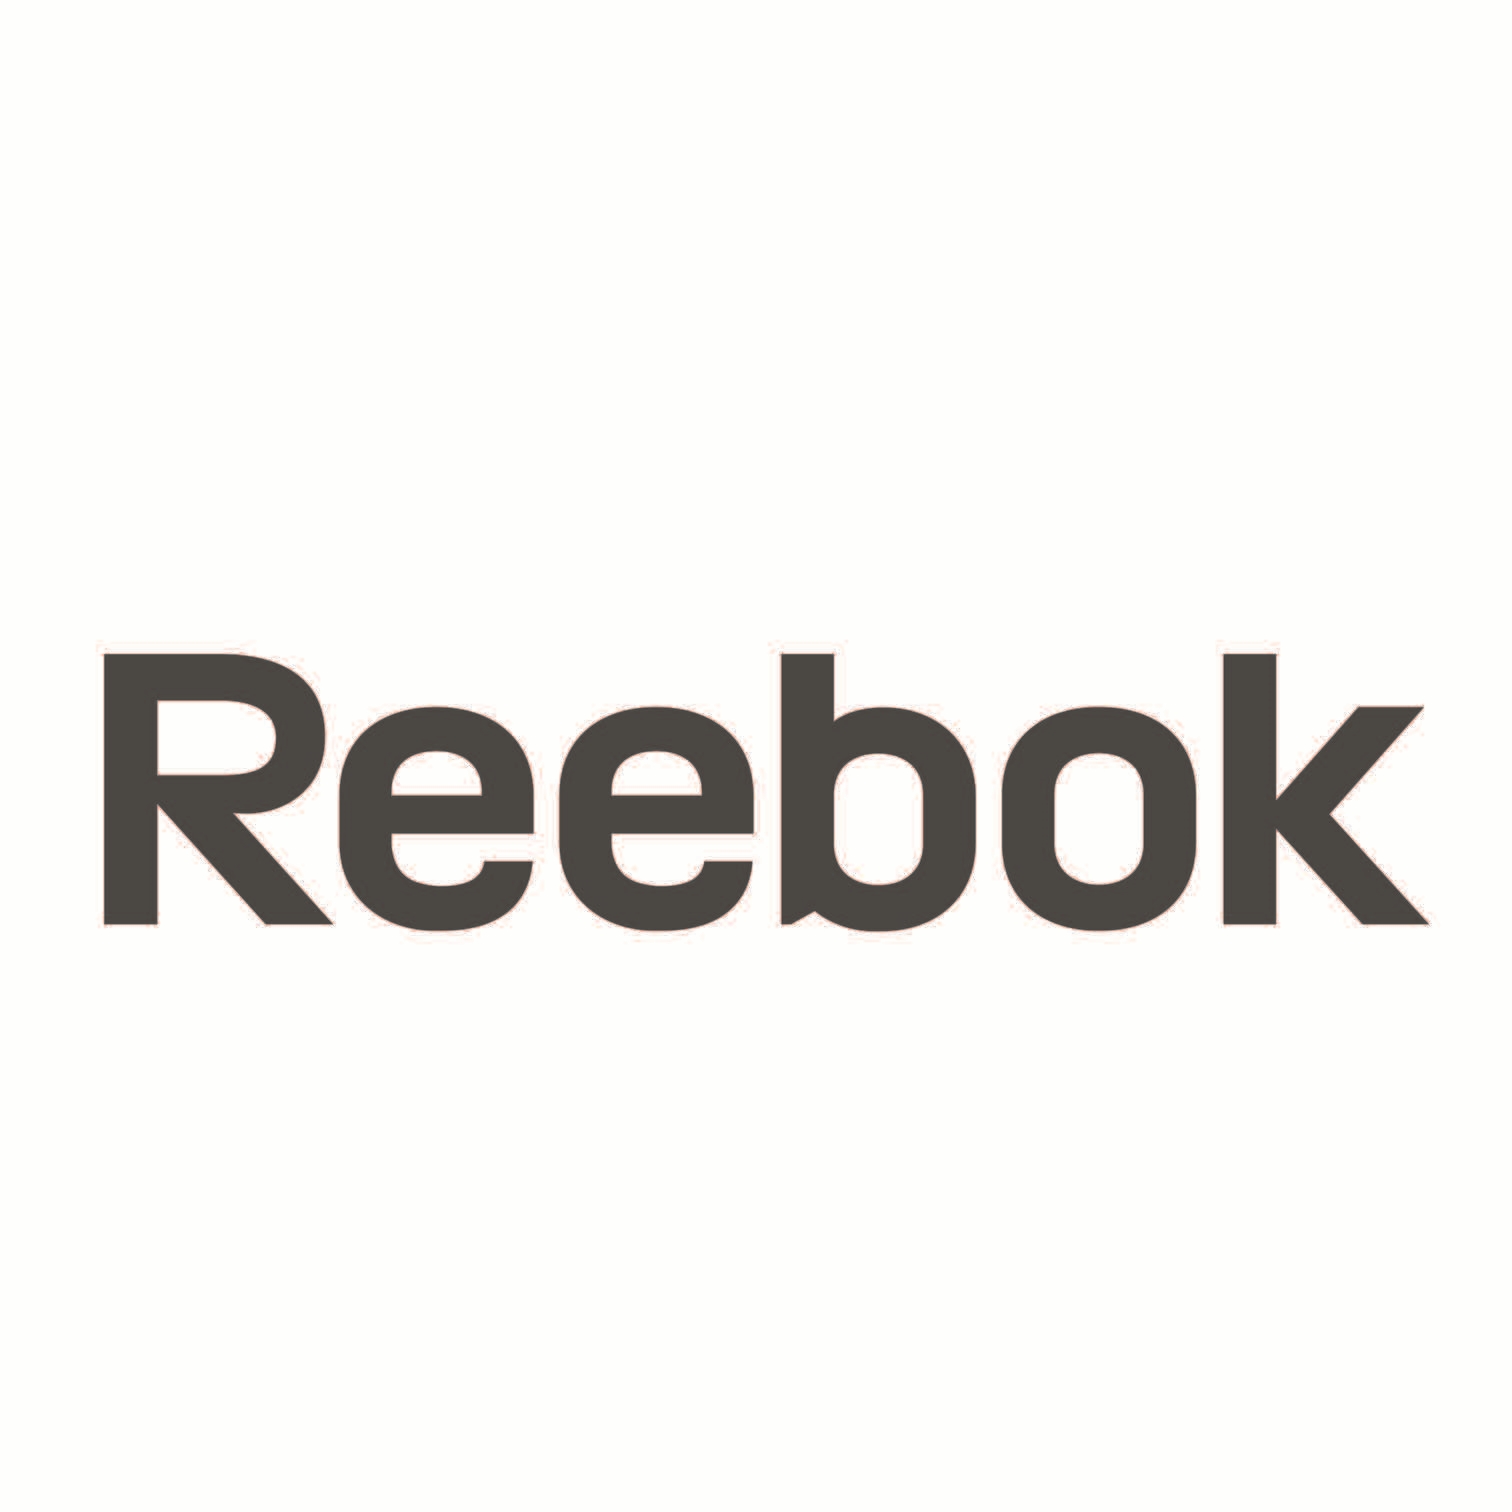 Reebok logo.jpg